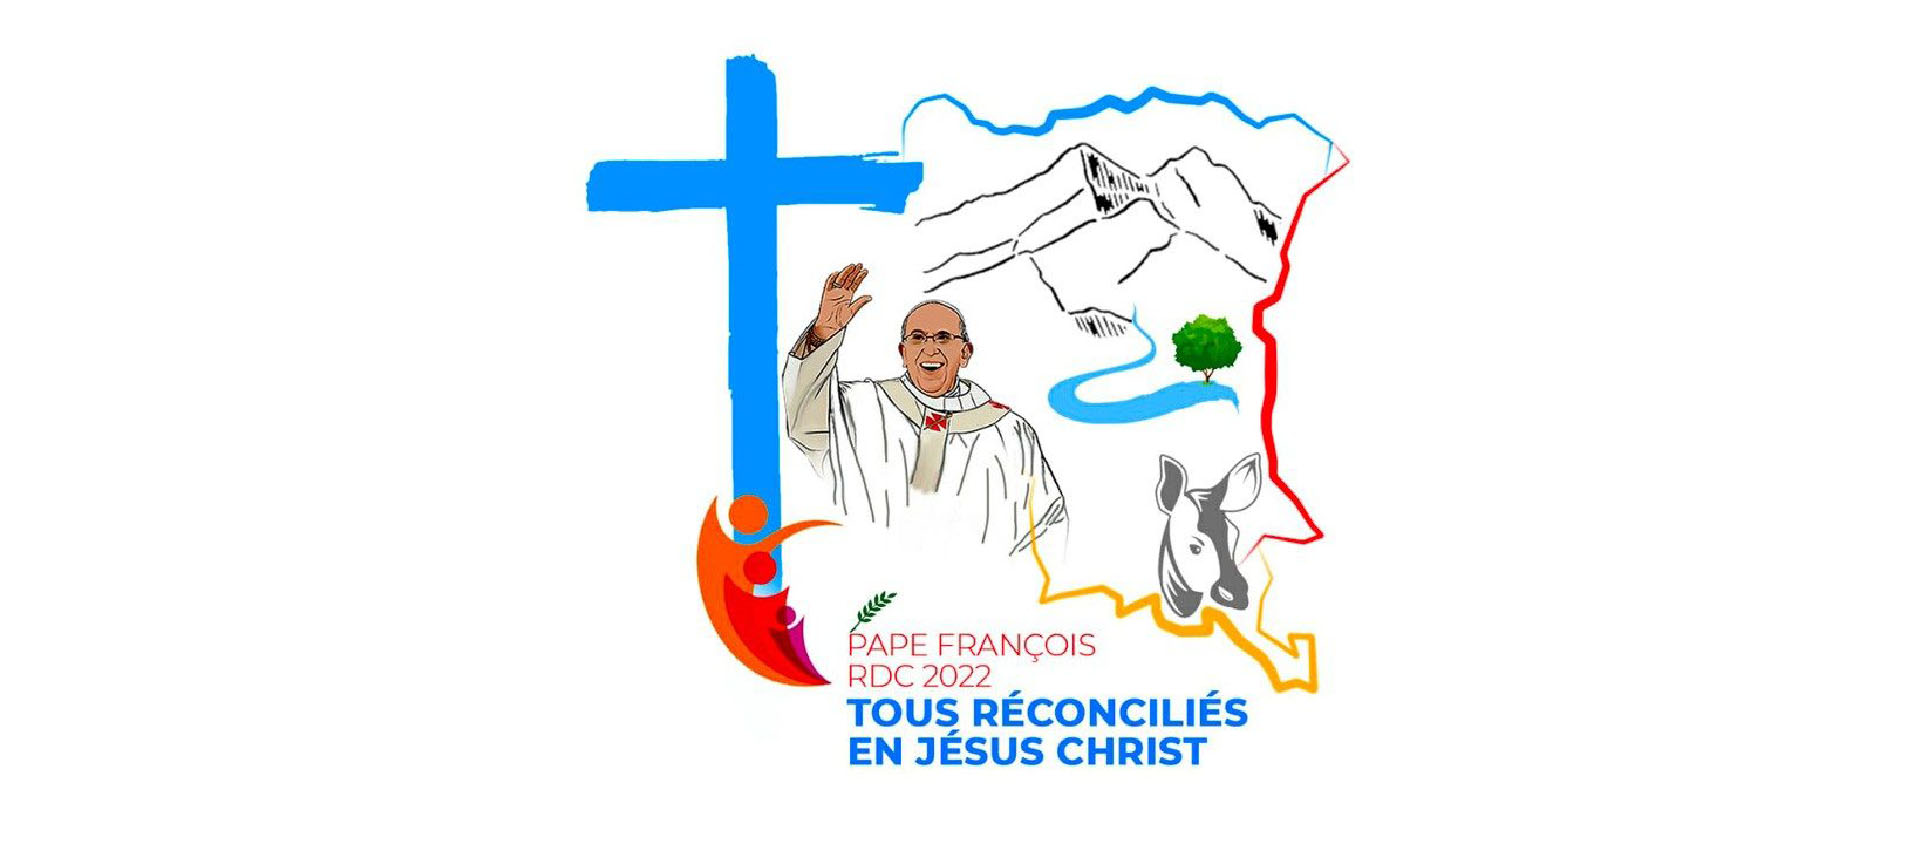 La carte stylisée de la République démocratique  du Congo englobe les montagnes, omniprésentes en RDC | © Vatican news